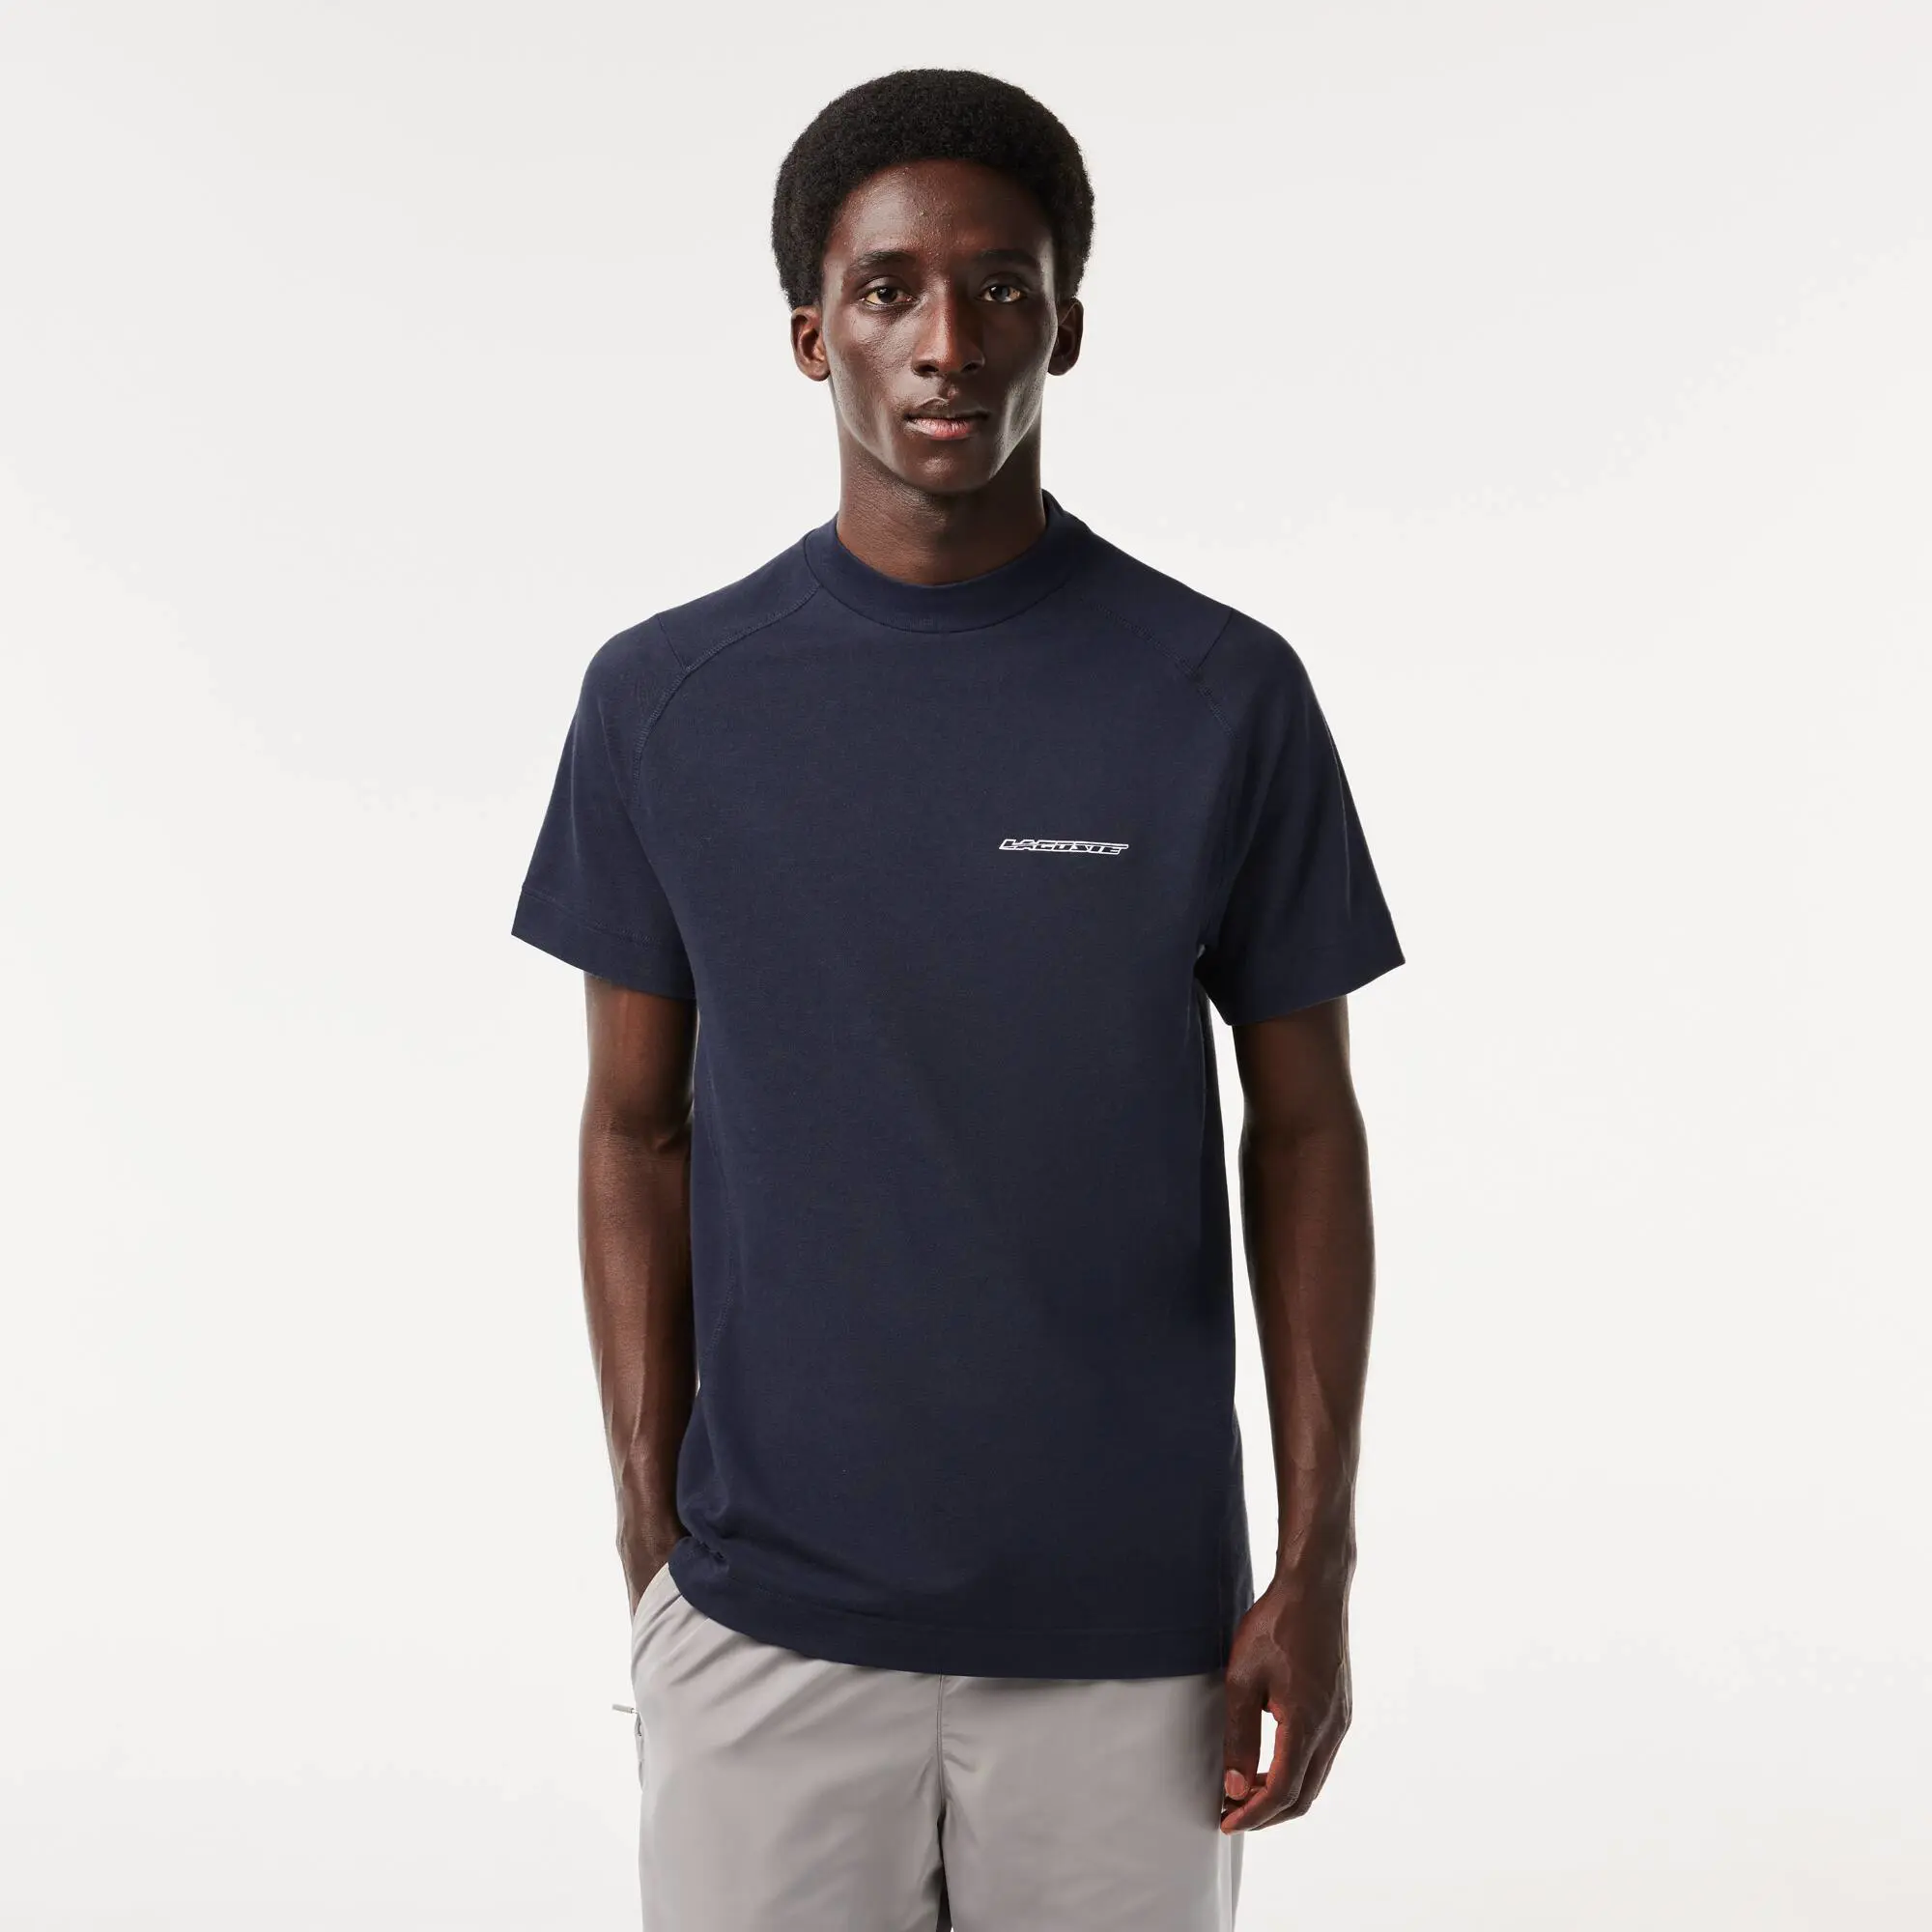 Lacoste T-shirt da uomo slim fit in piqué di cotone biologico Lacoste. 1